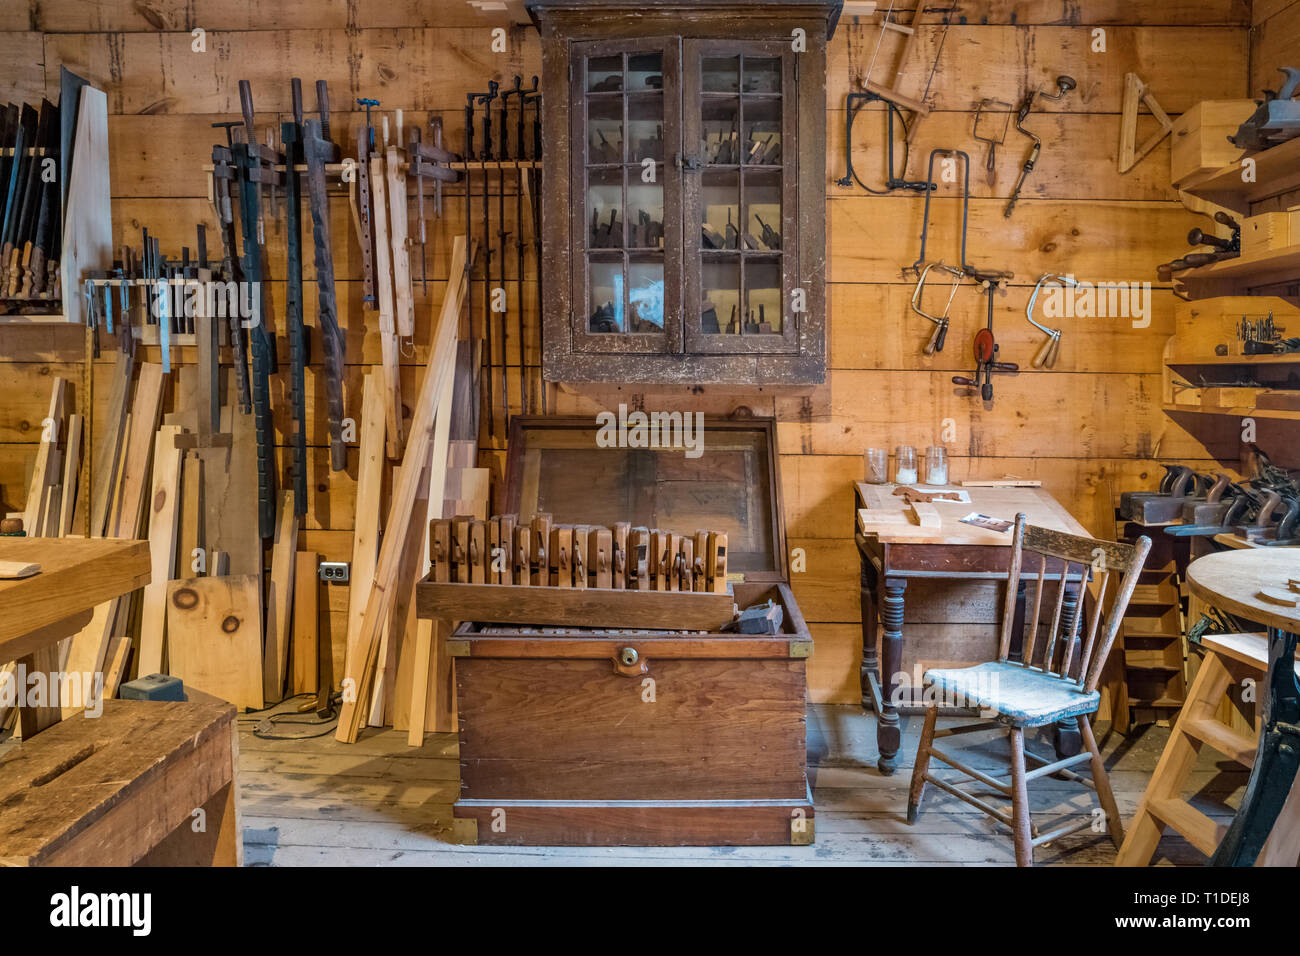 Outils de charpentier dans une période atelier de menuiserie Westfield Heritage Village près de Hamilton, Ontario, Canada Banque D'Images